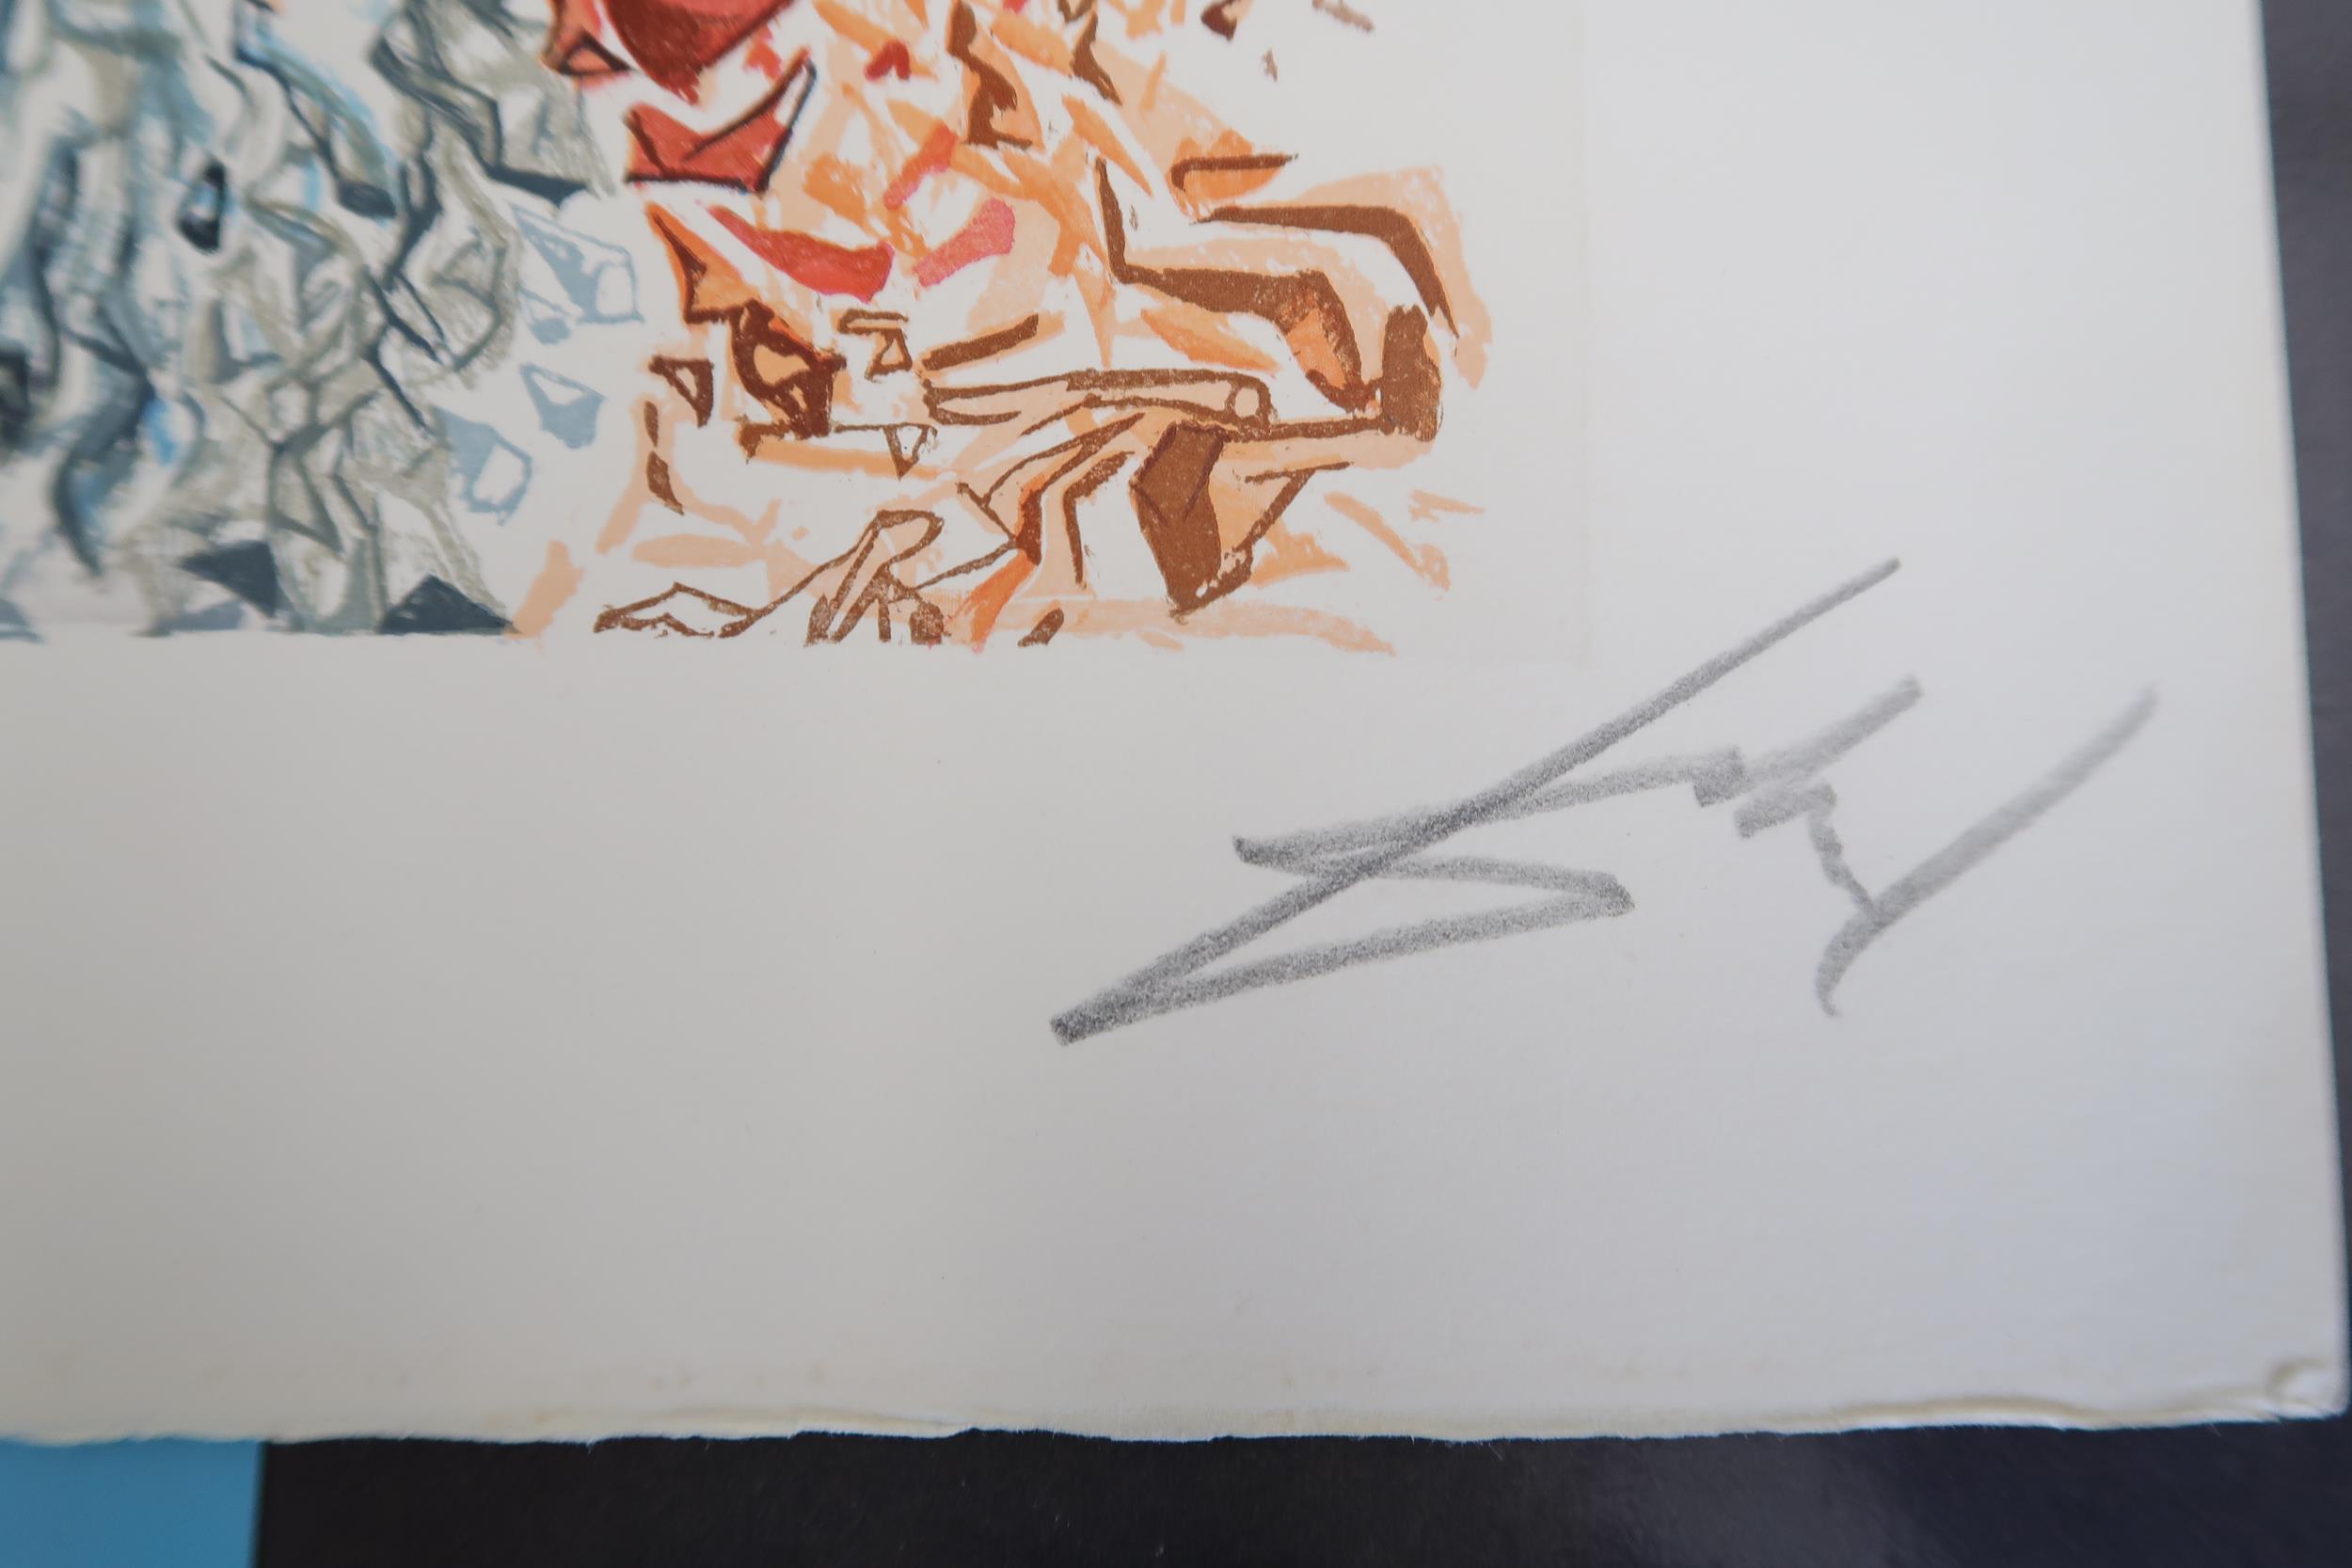 Salvador Dali - Print, unframed - The Dusk of Souls - 18cm x 24cm - signed - Image 2 of 2